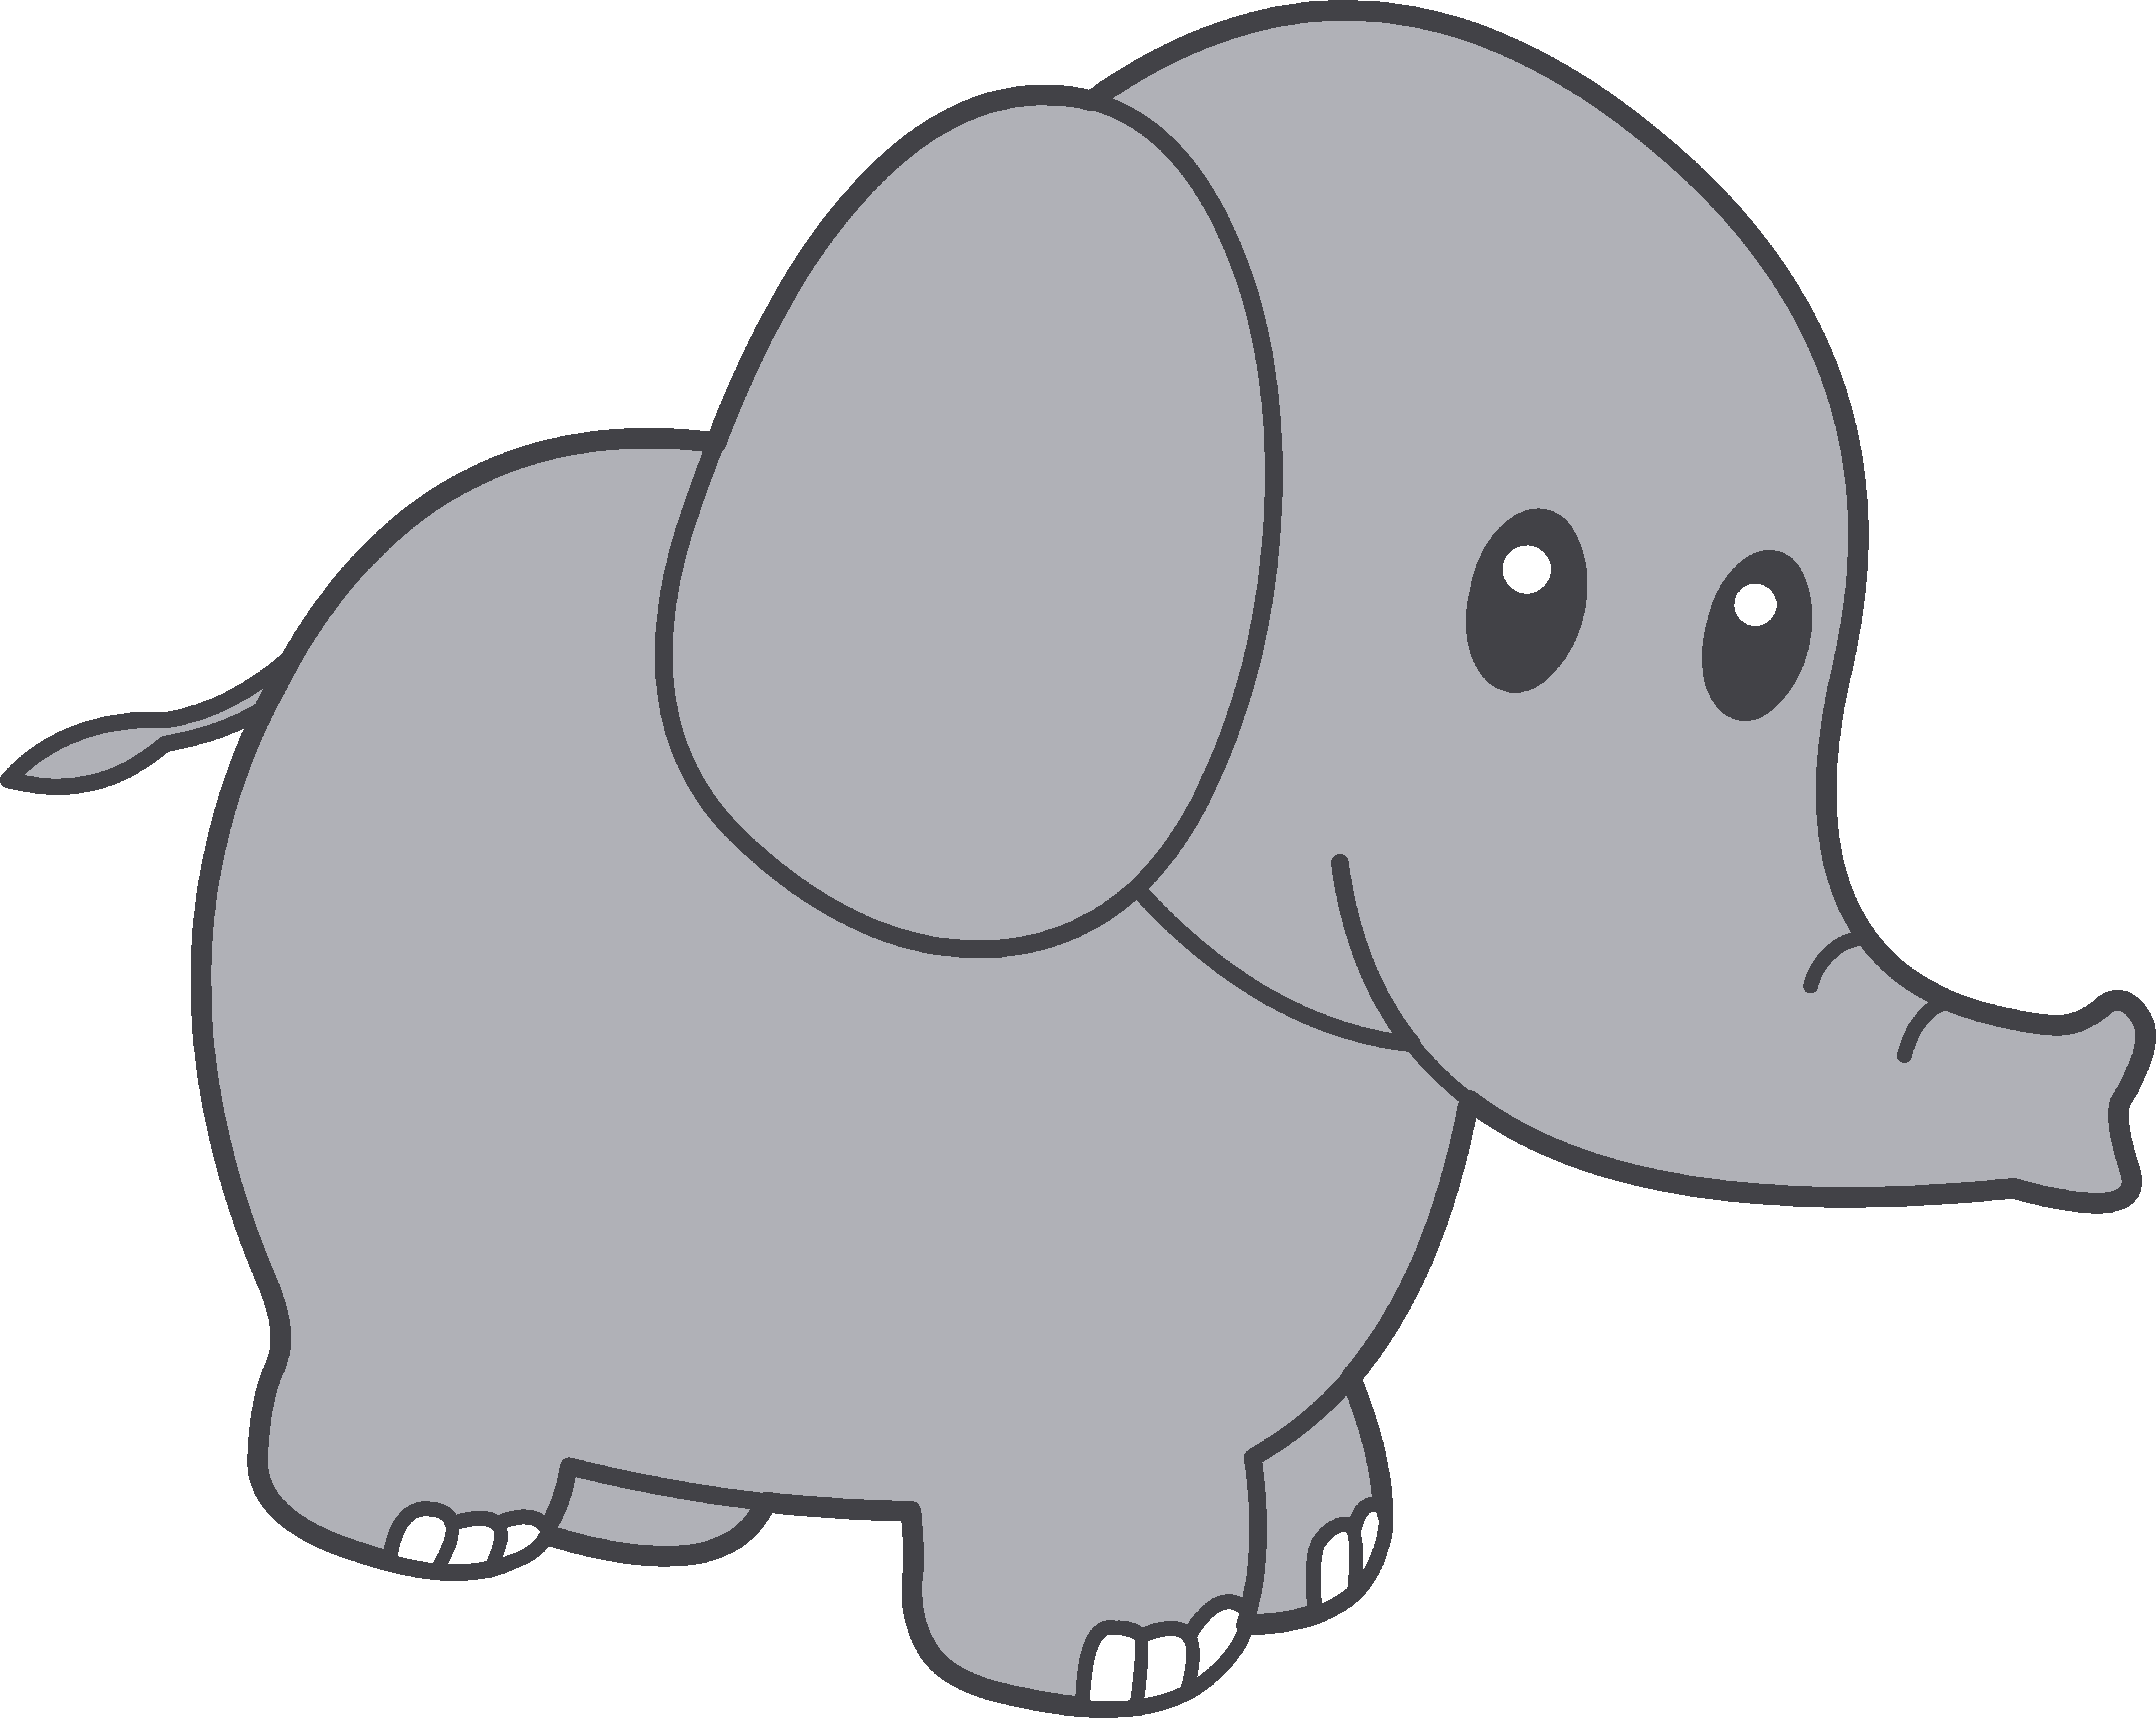 Elephant clipart cartoon